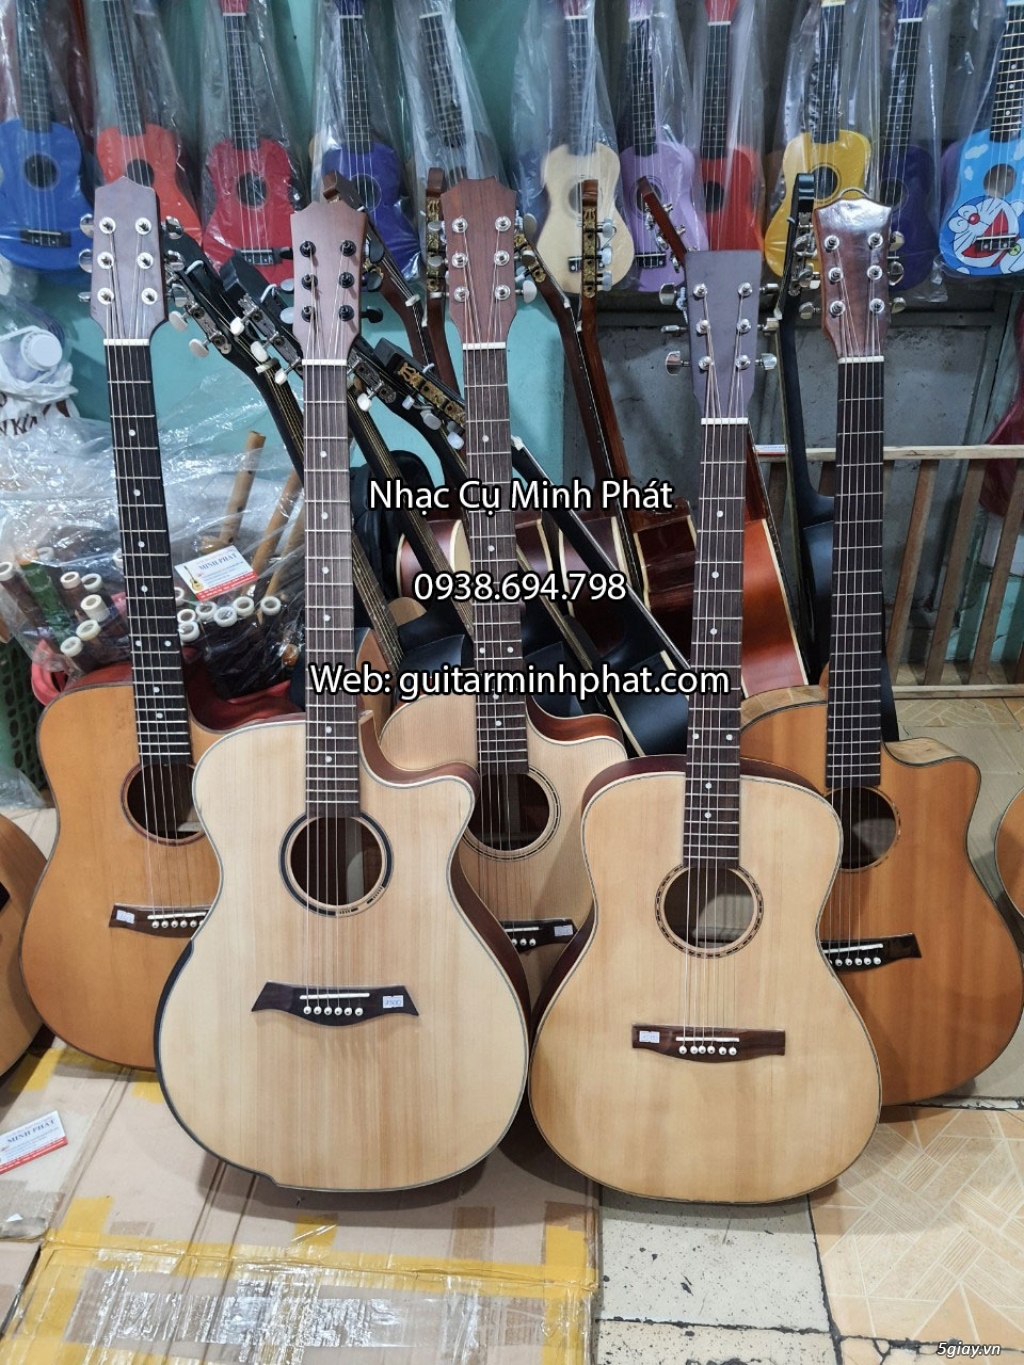 Bán đàn guitar, ukulele, kalimba giá rẻ ở quận Gò Vấp TPHCM - 1